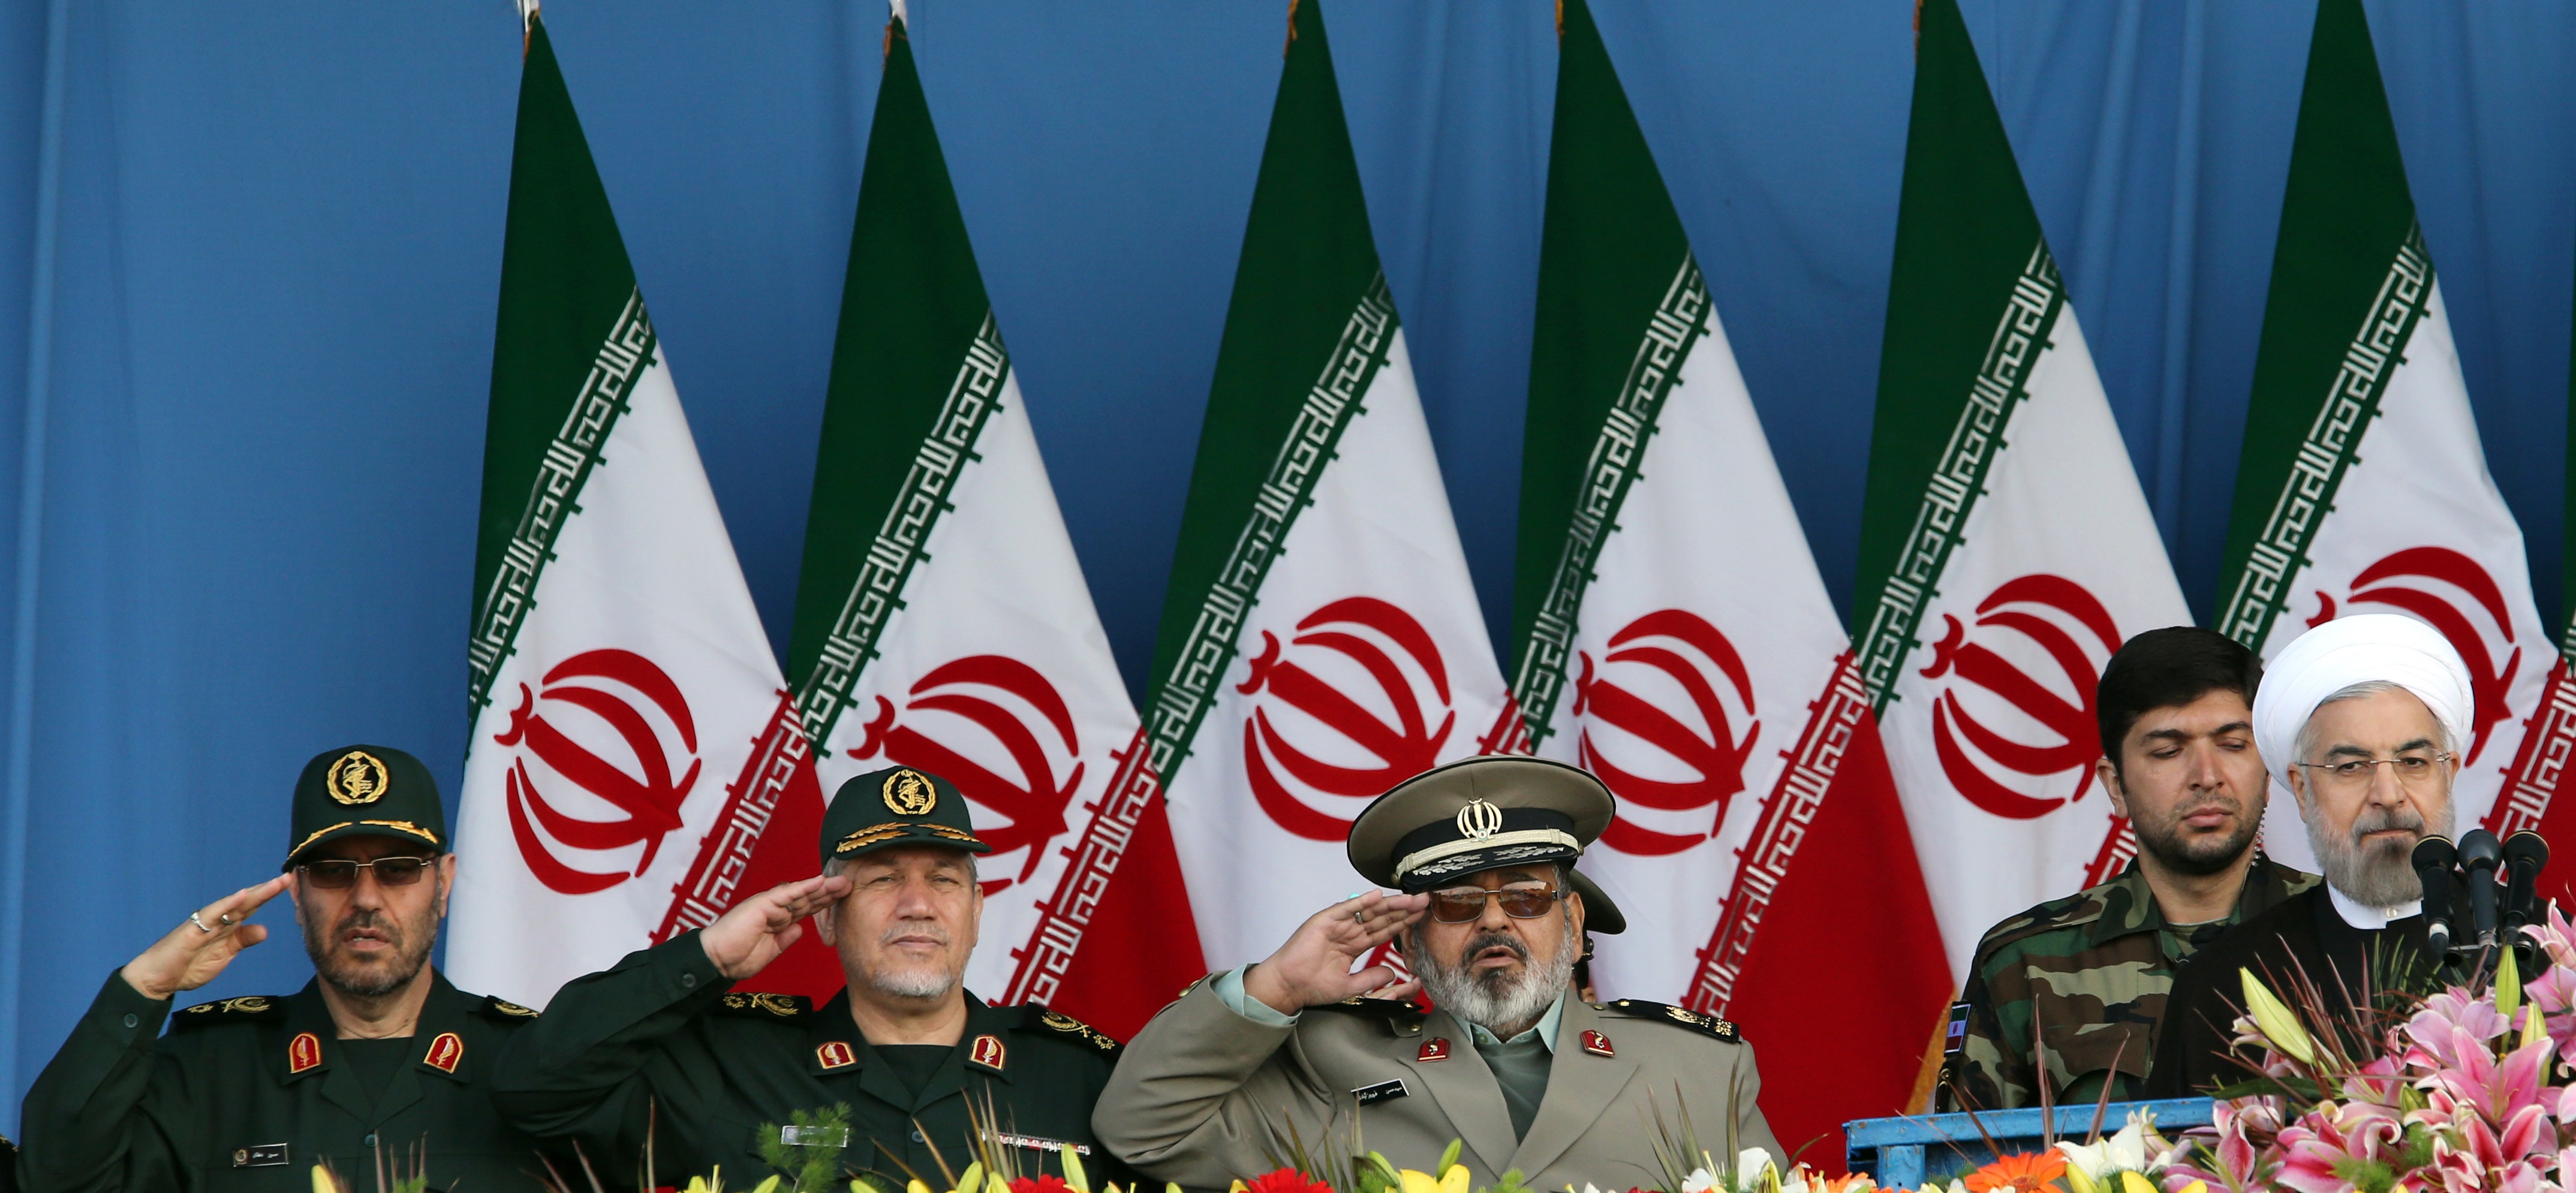 روحاني لديه شيء أيضا ليس لدى الحرس الثوريّ والمرشد الأعلى: ألا وهو الشرعيّة بين الجمهور. ففي نهاية الأمر فإنّ الرئيس مسؤول أمام صندوق الاقتراع  (الأوروبية)